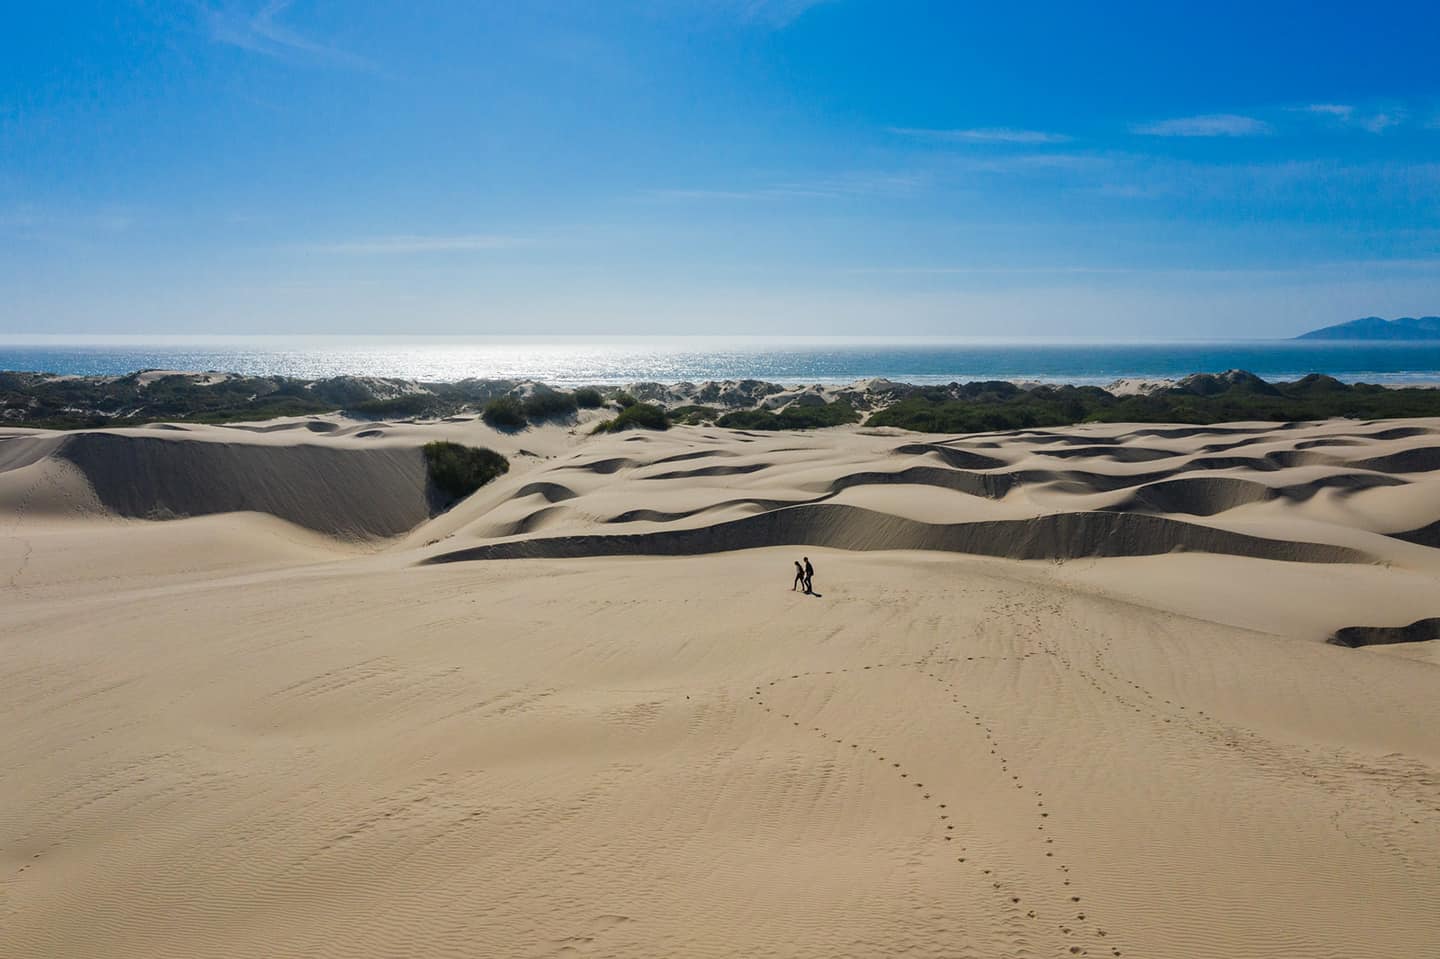 Oceano Dunes Aerial View